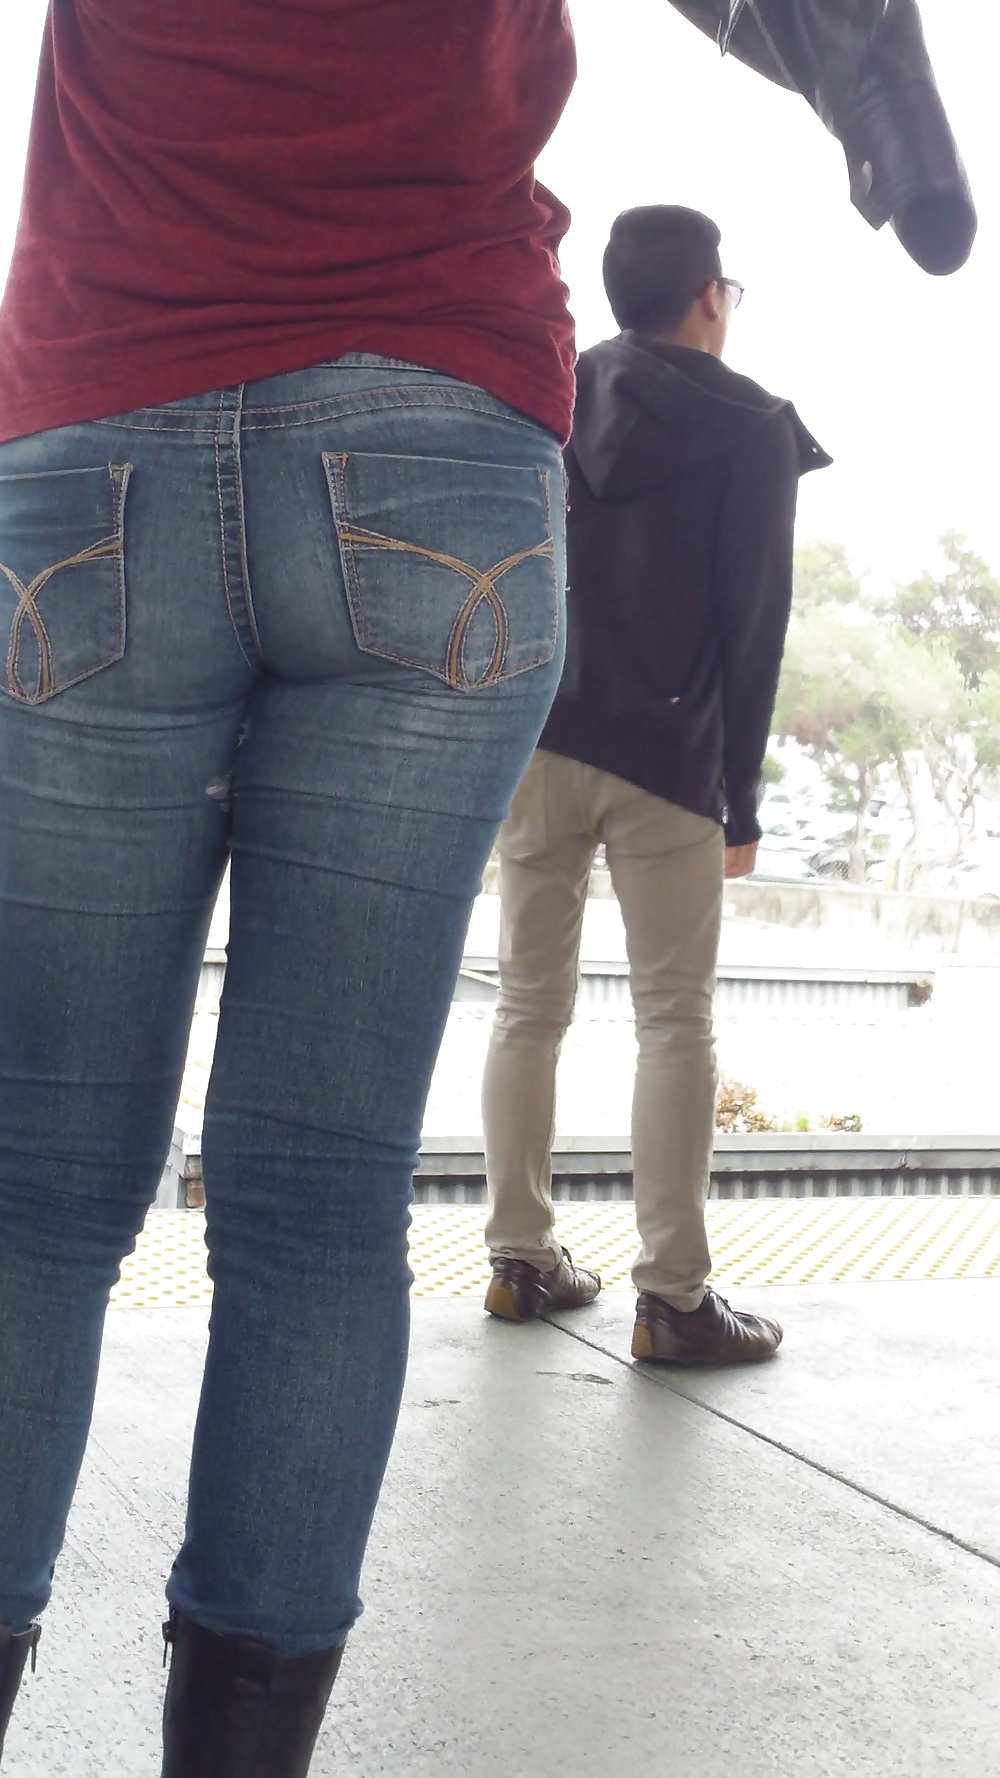 Sexy tight teen ass & butt in blue jeans #23556765